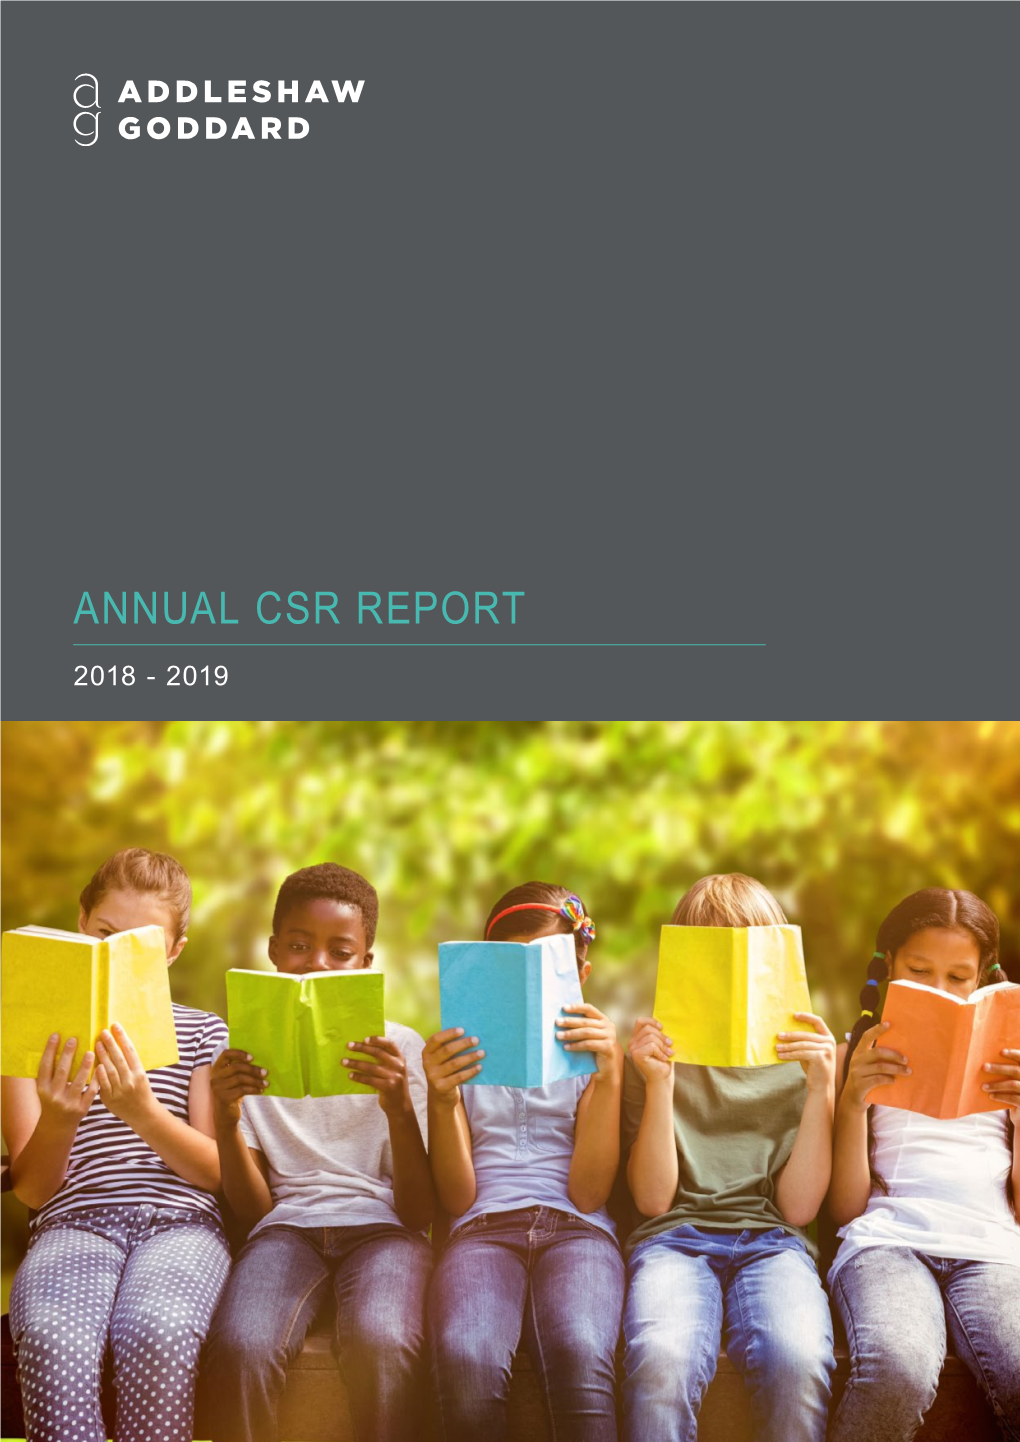 Annual Csr Report